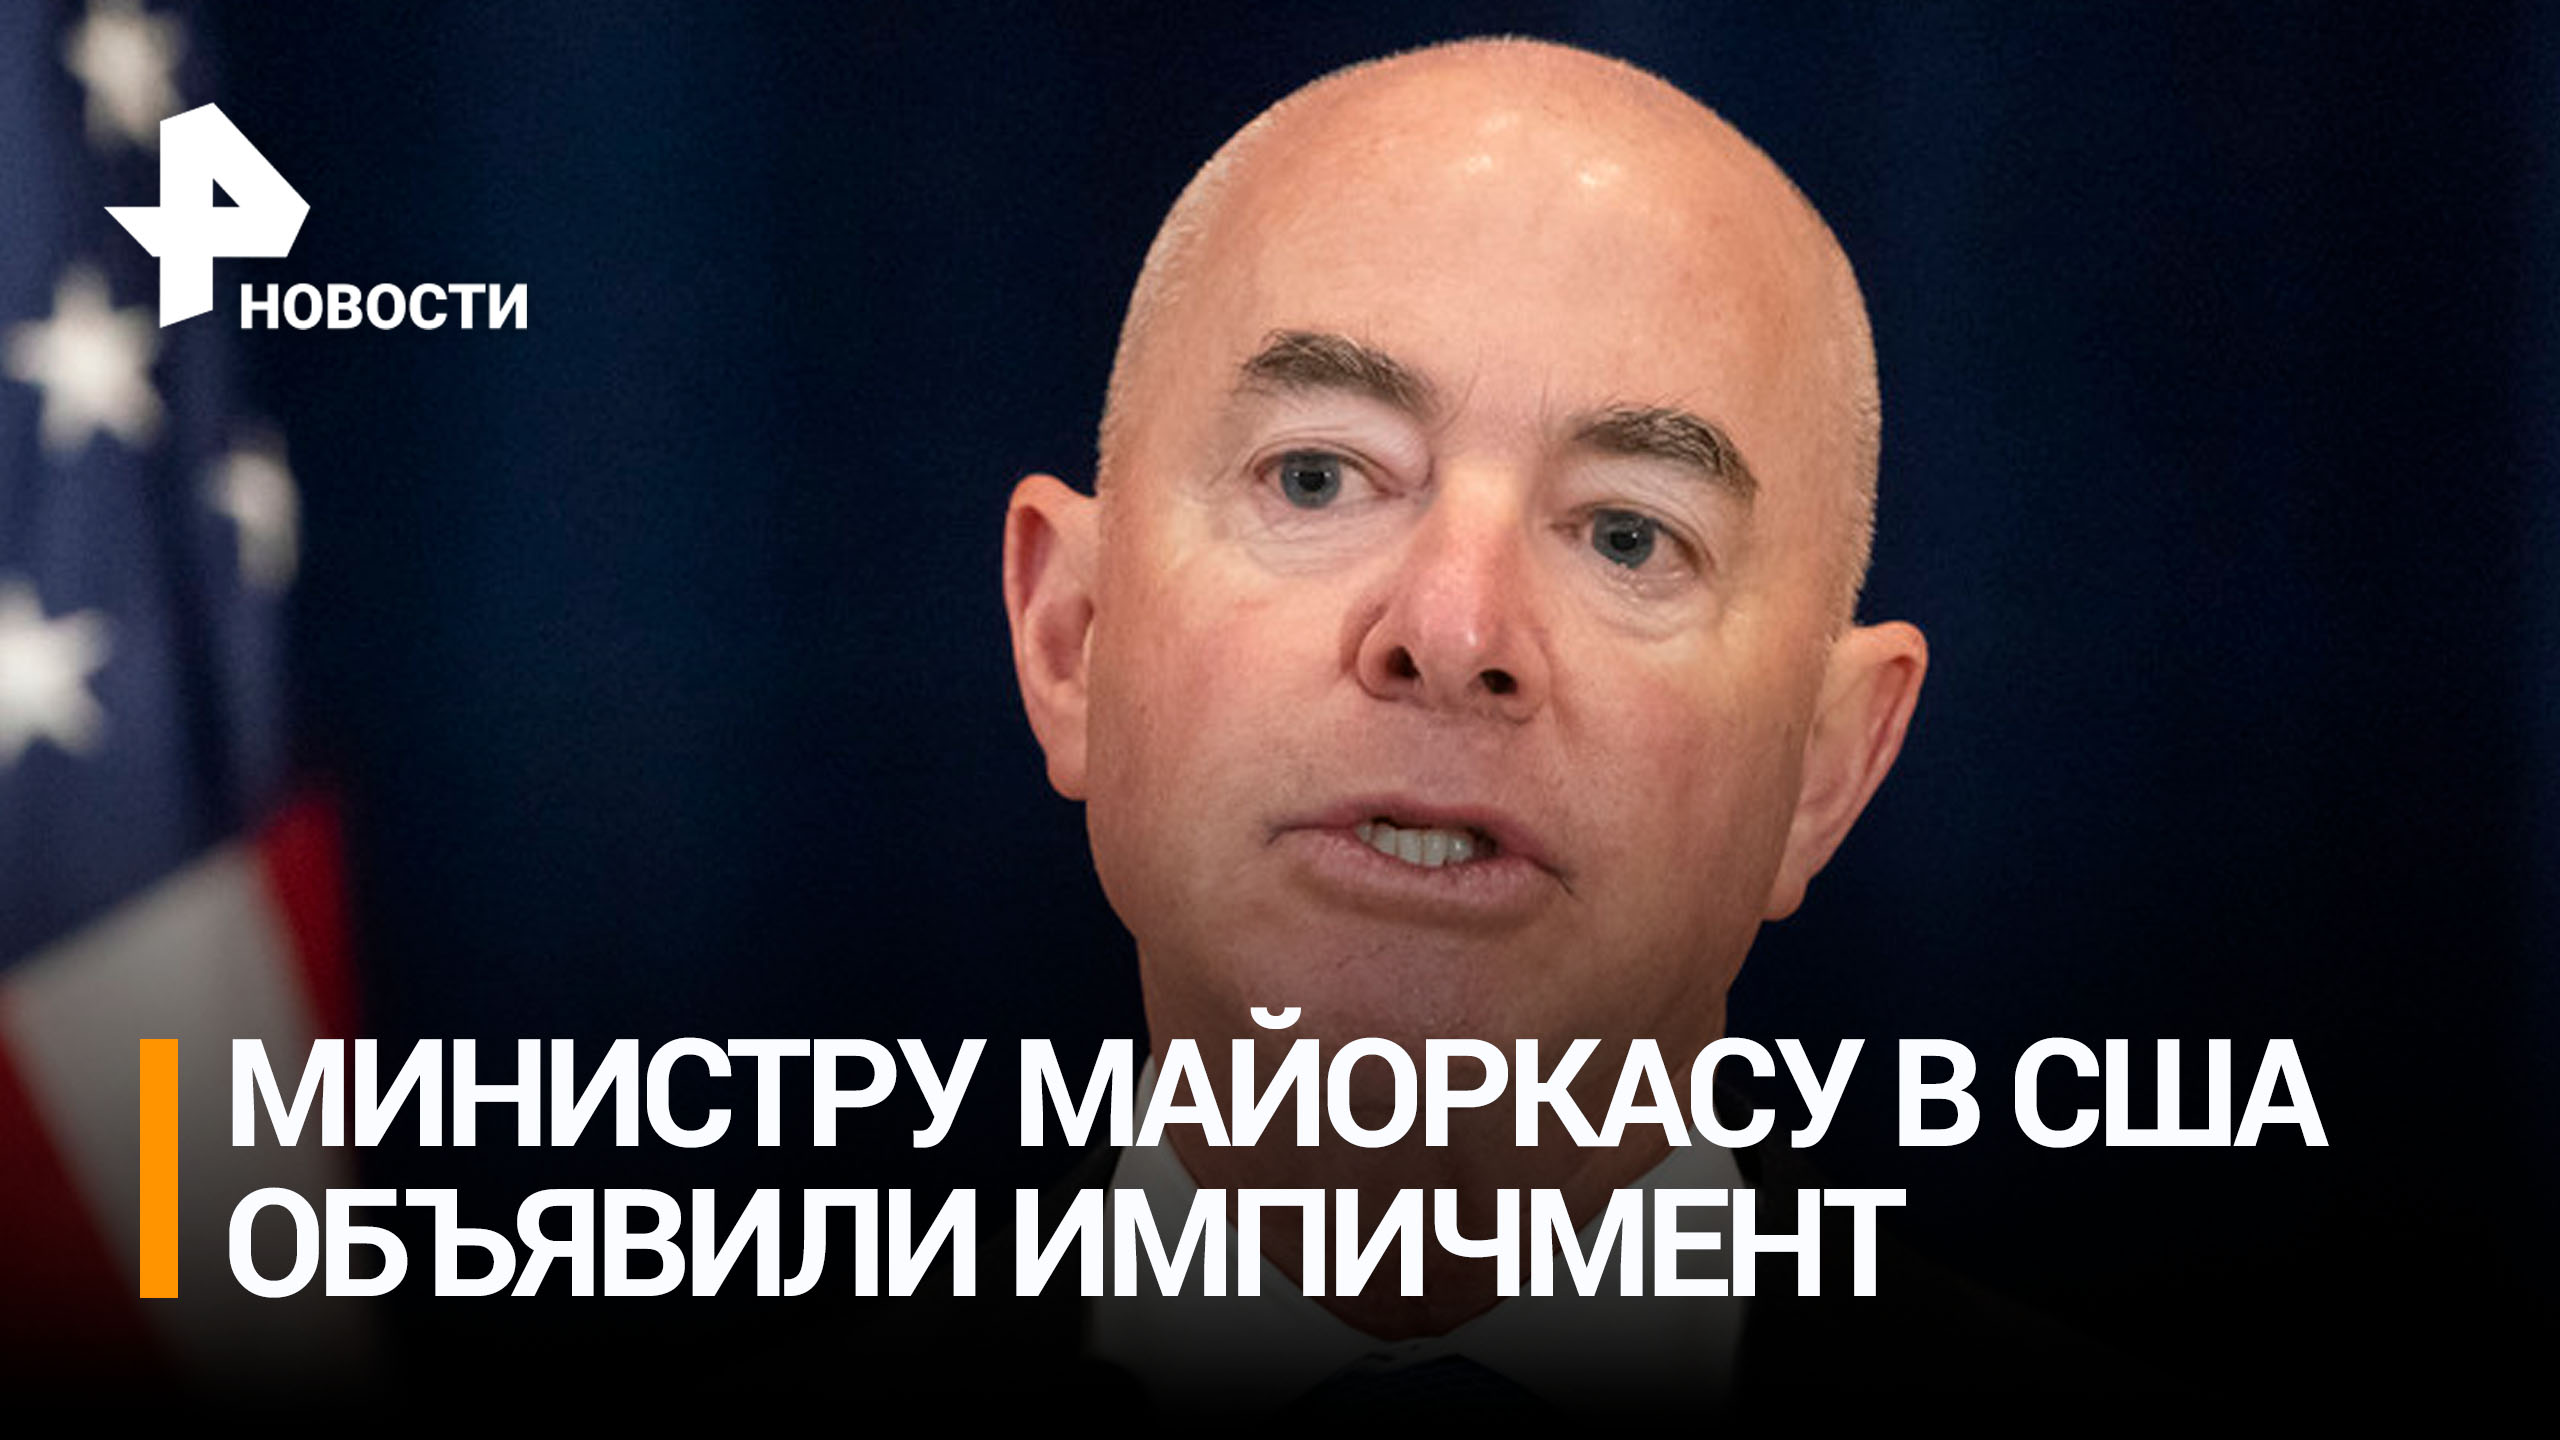 Палата представителей объявила импичмент министру Майоркасу / РЕН Новости